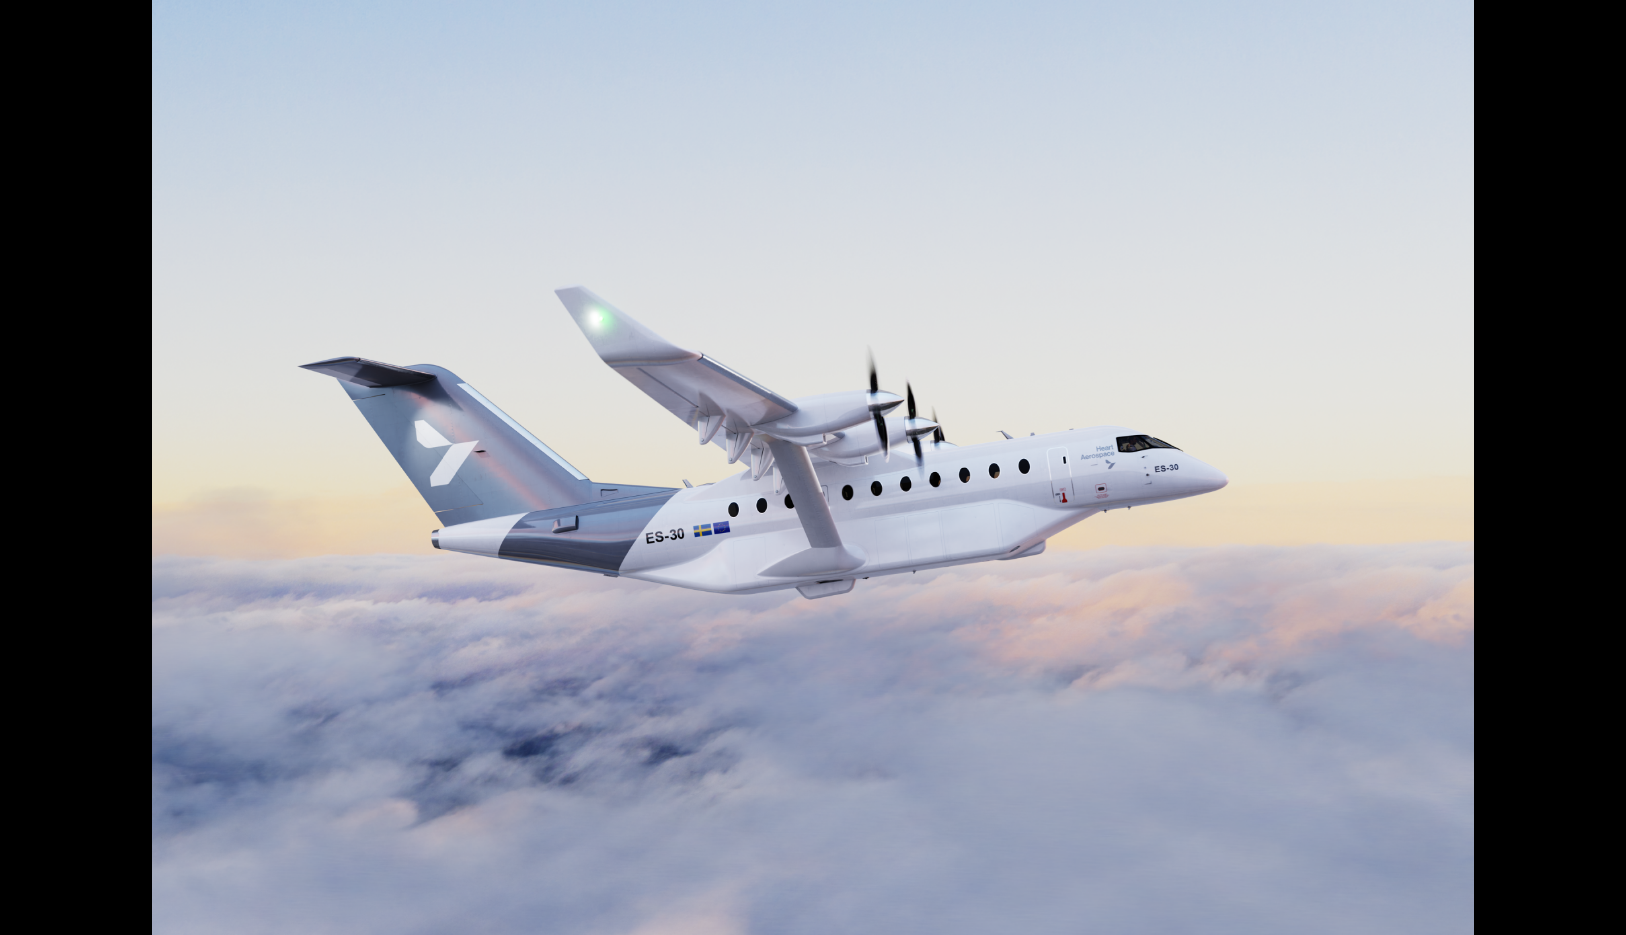 طائرة شركة "هارت إيروسبيس" طراز "إي إس-30" الكهربائية، تتسع لثلاثين راكباً وتطير مسافة 200 كيلومتر بصفر  انبعاثات